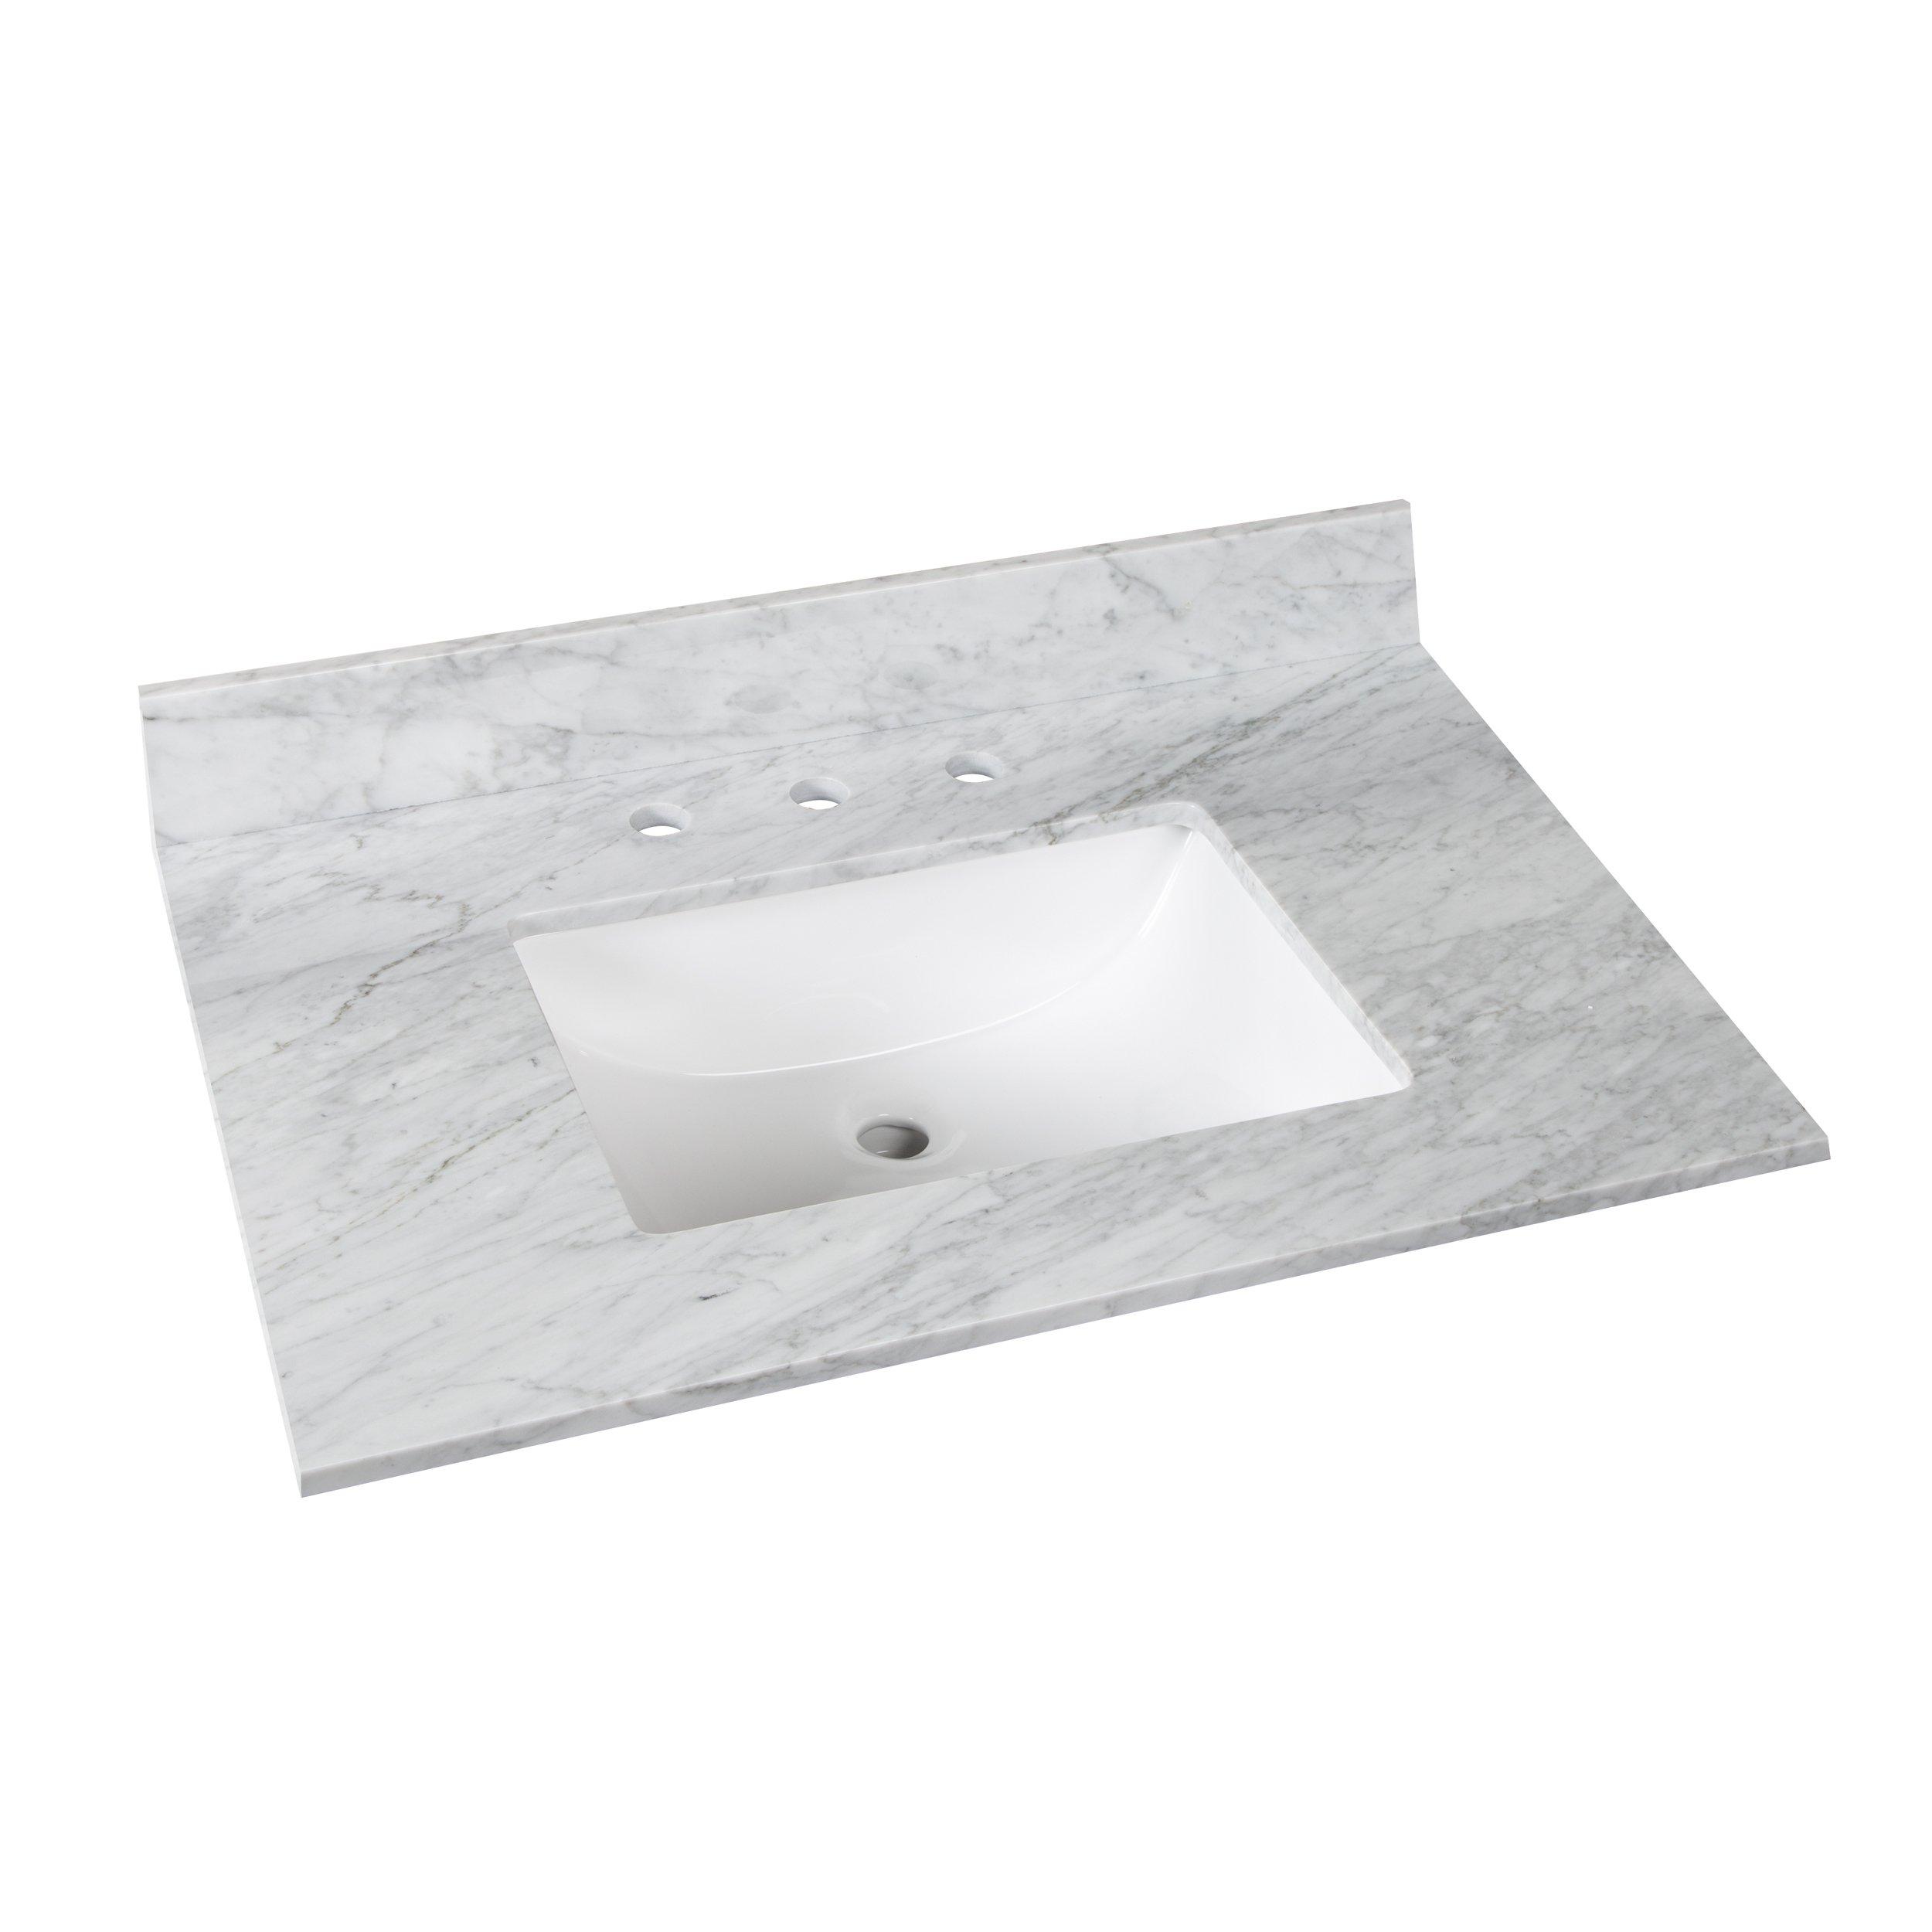 Bianco Carrara Marble 31 in. Vanity Top includes Backsplash